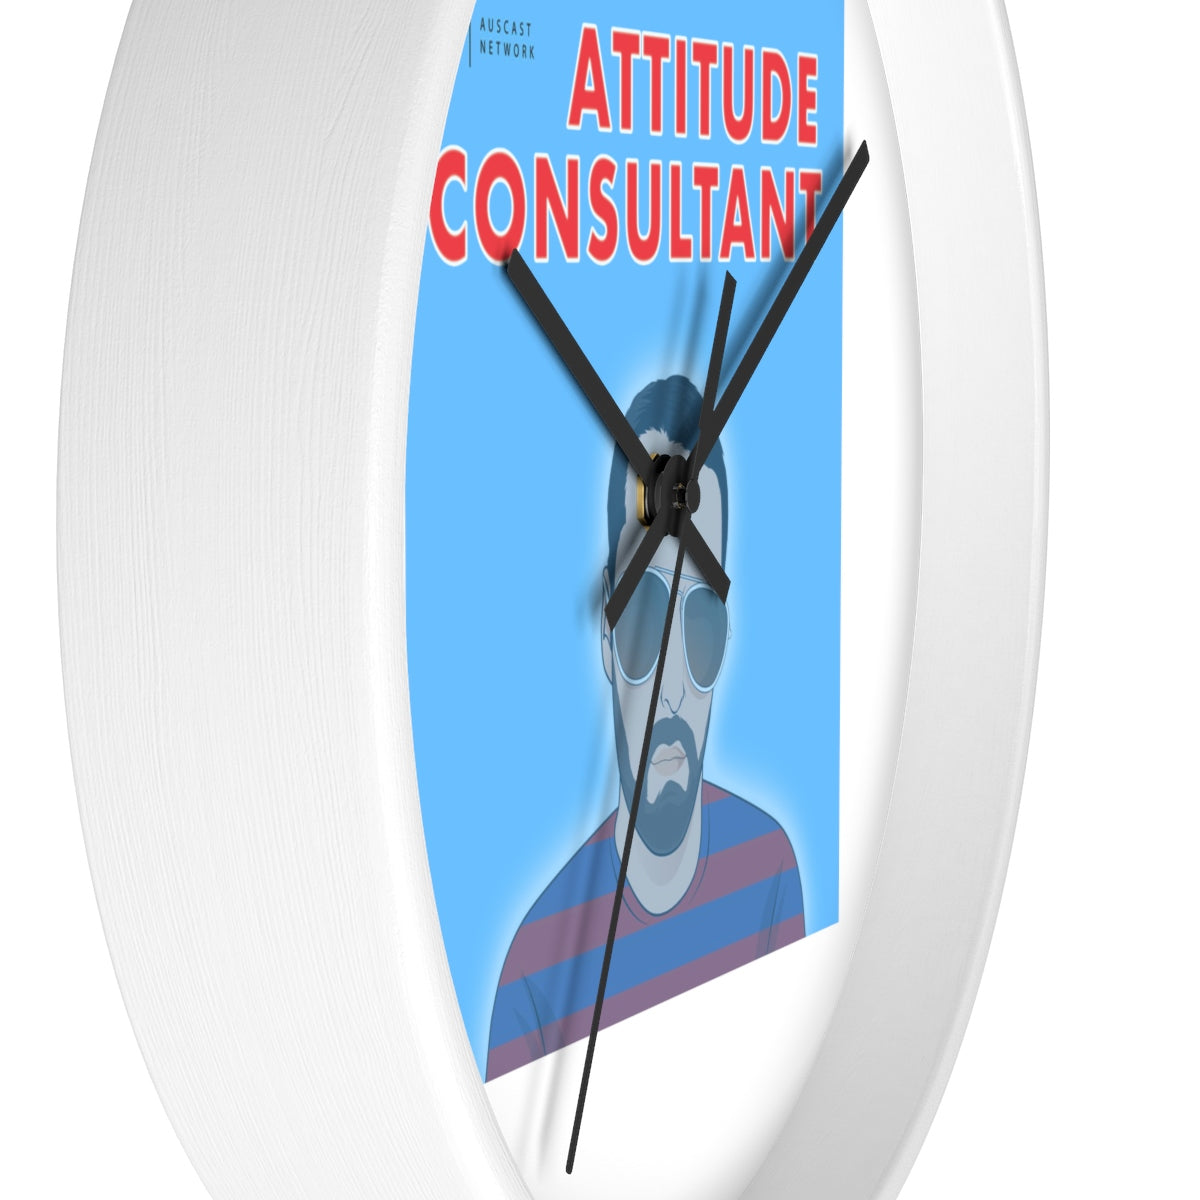 Attitude Consultant Wall clock